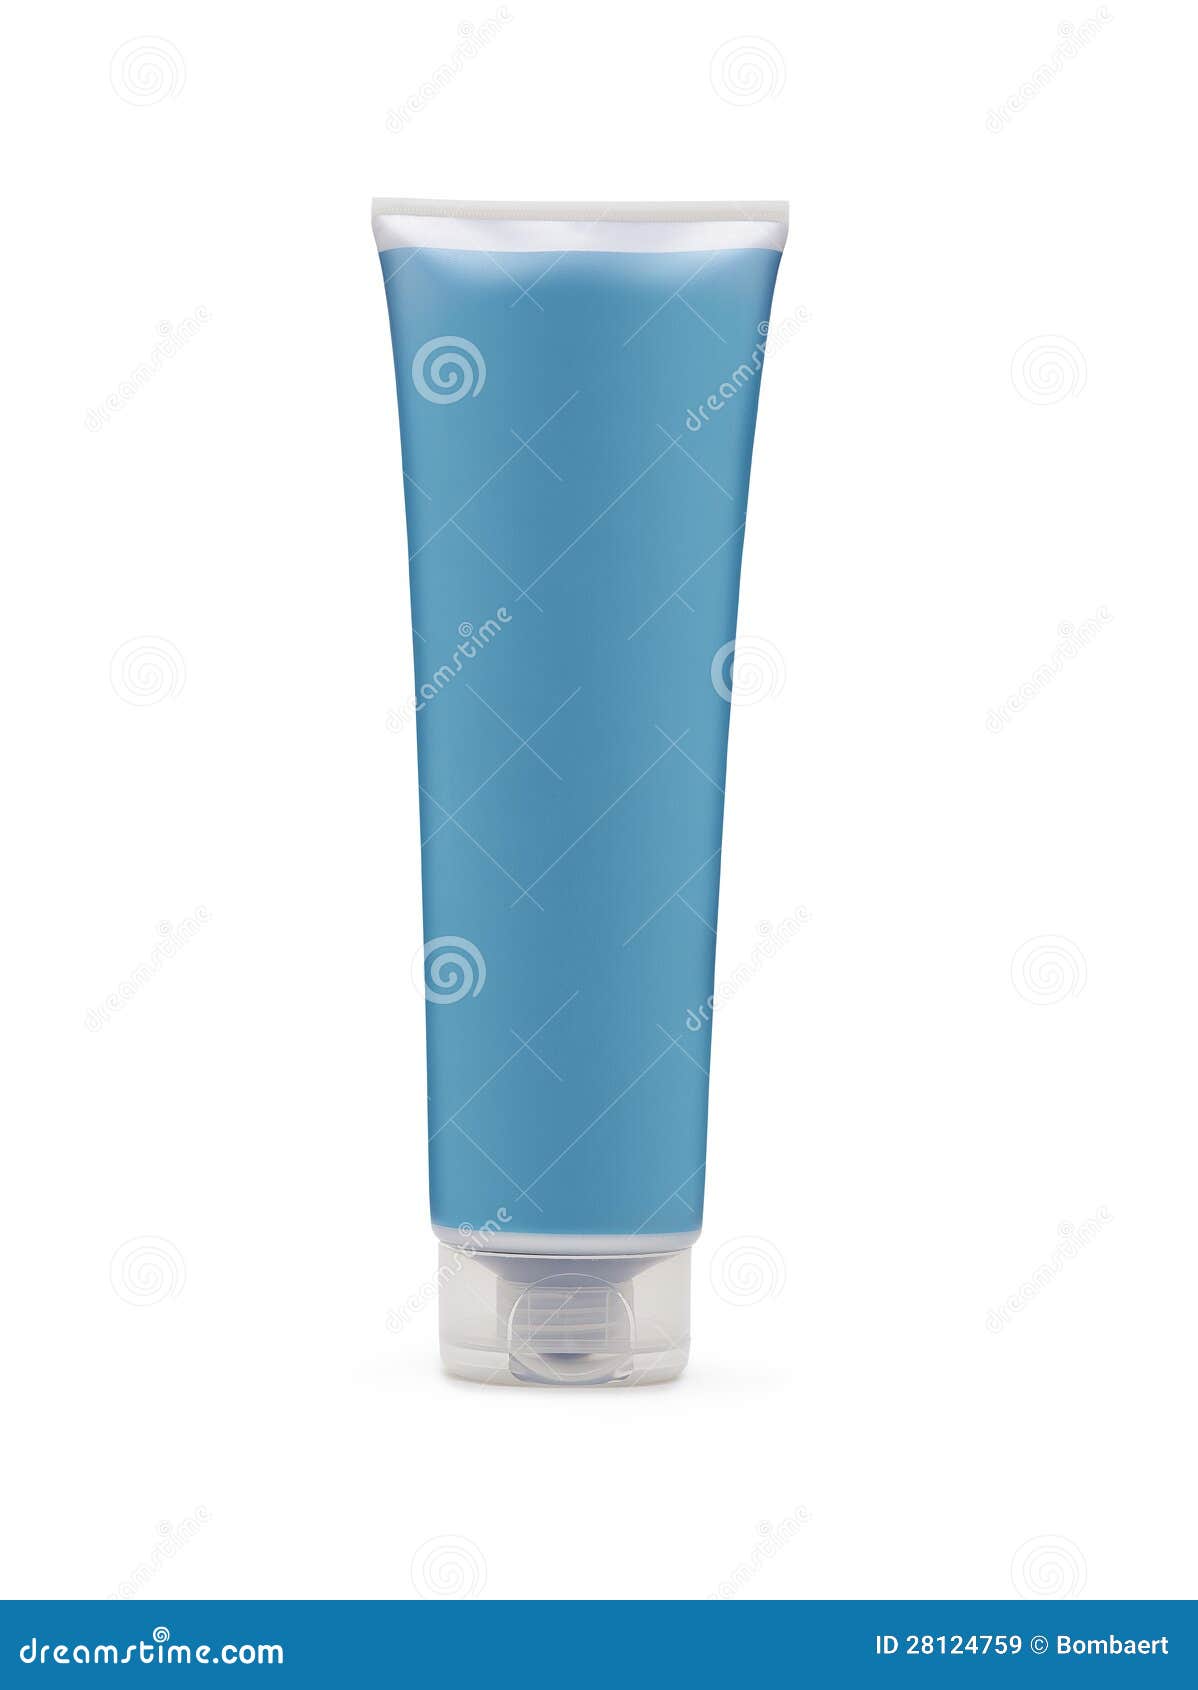 blue shampoo bottle on white